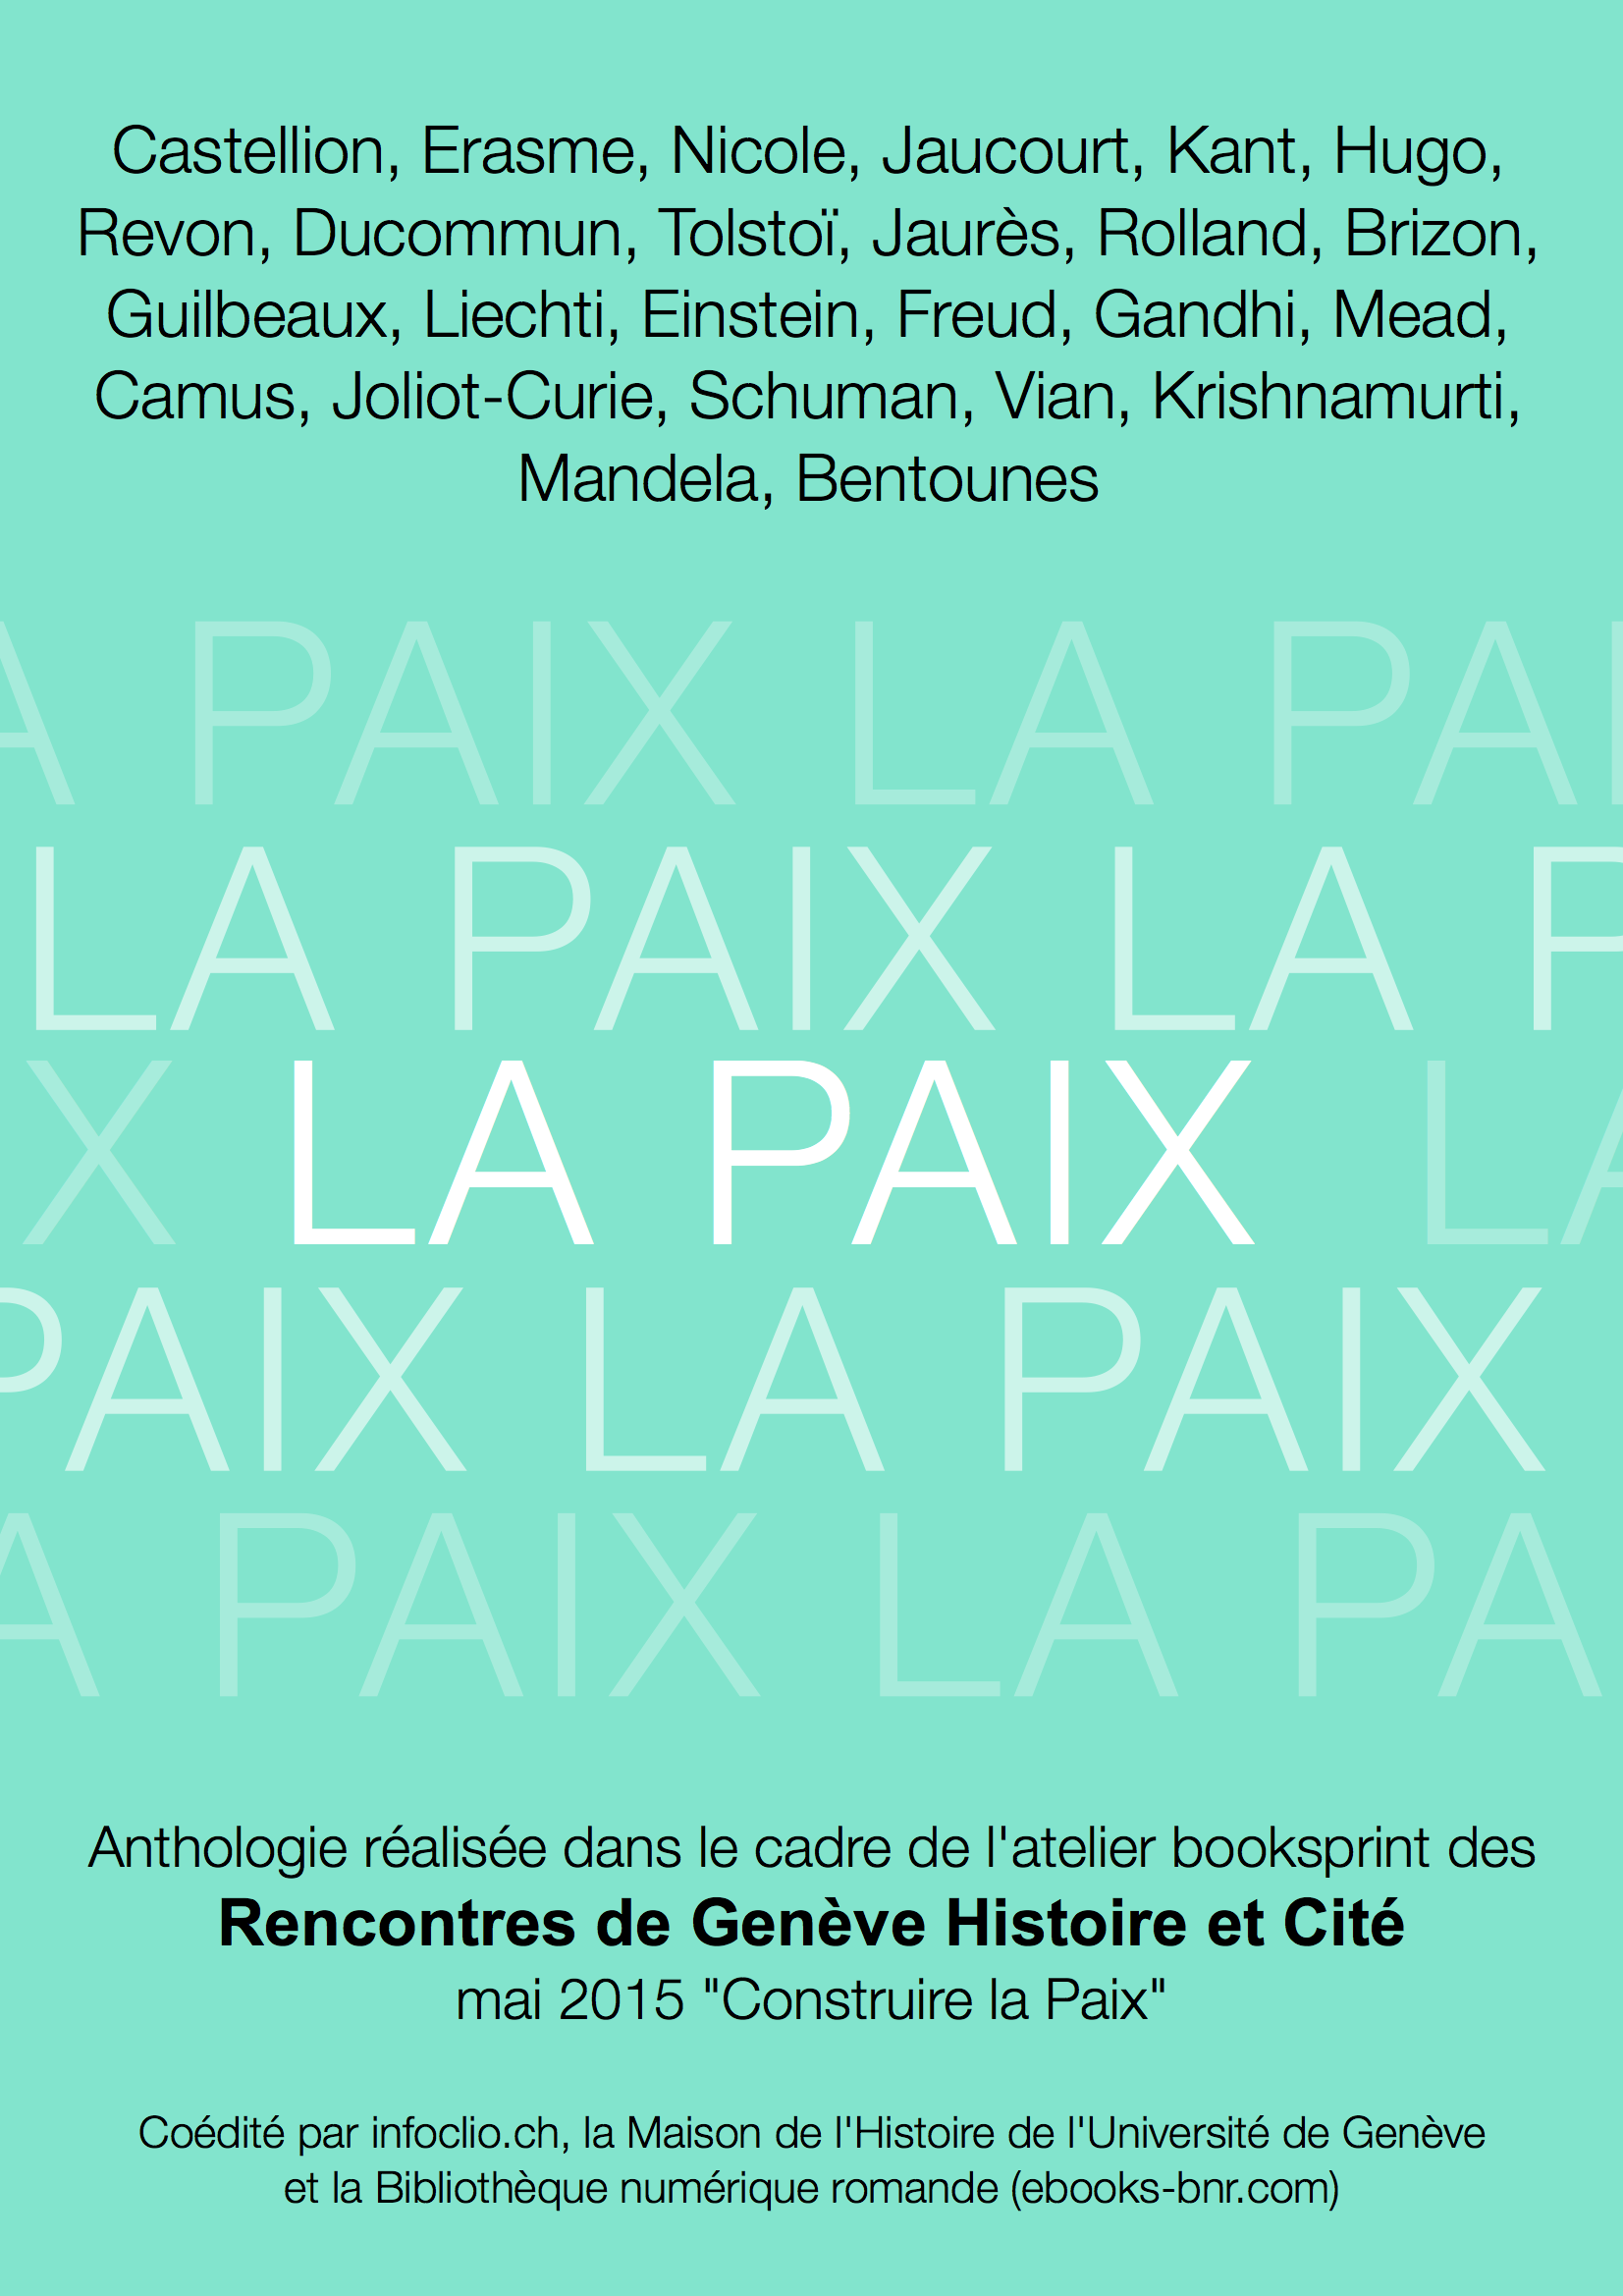 “La Paix” – Anthologie numérique de textes sur le pacifisme